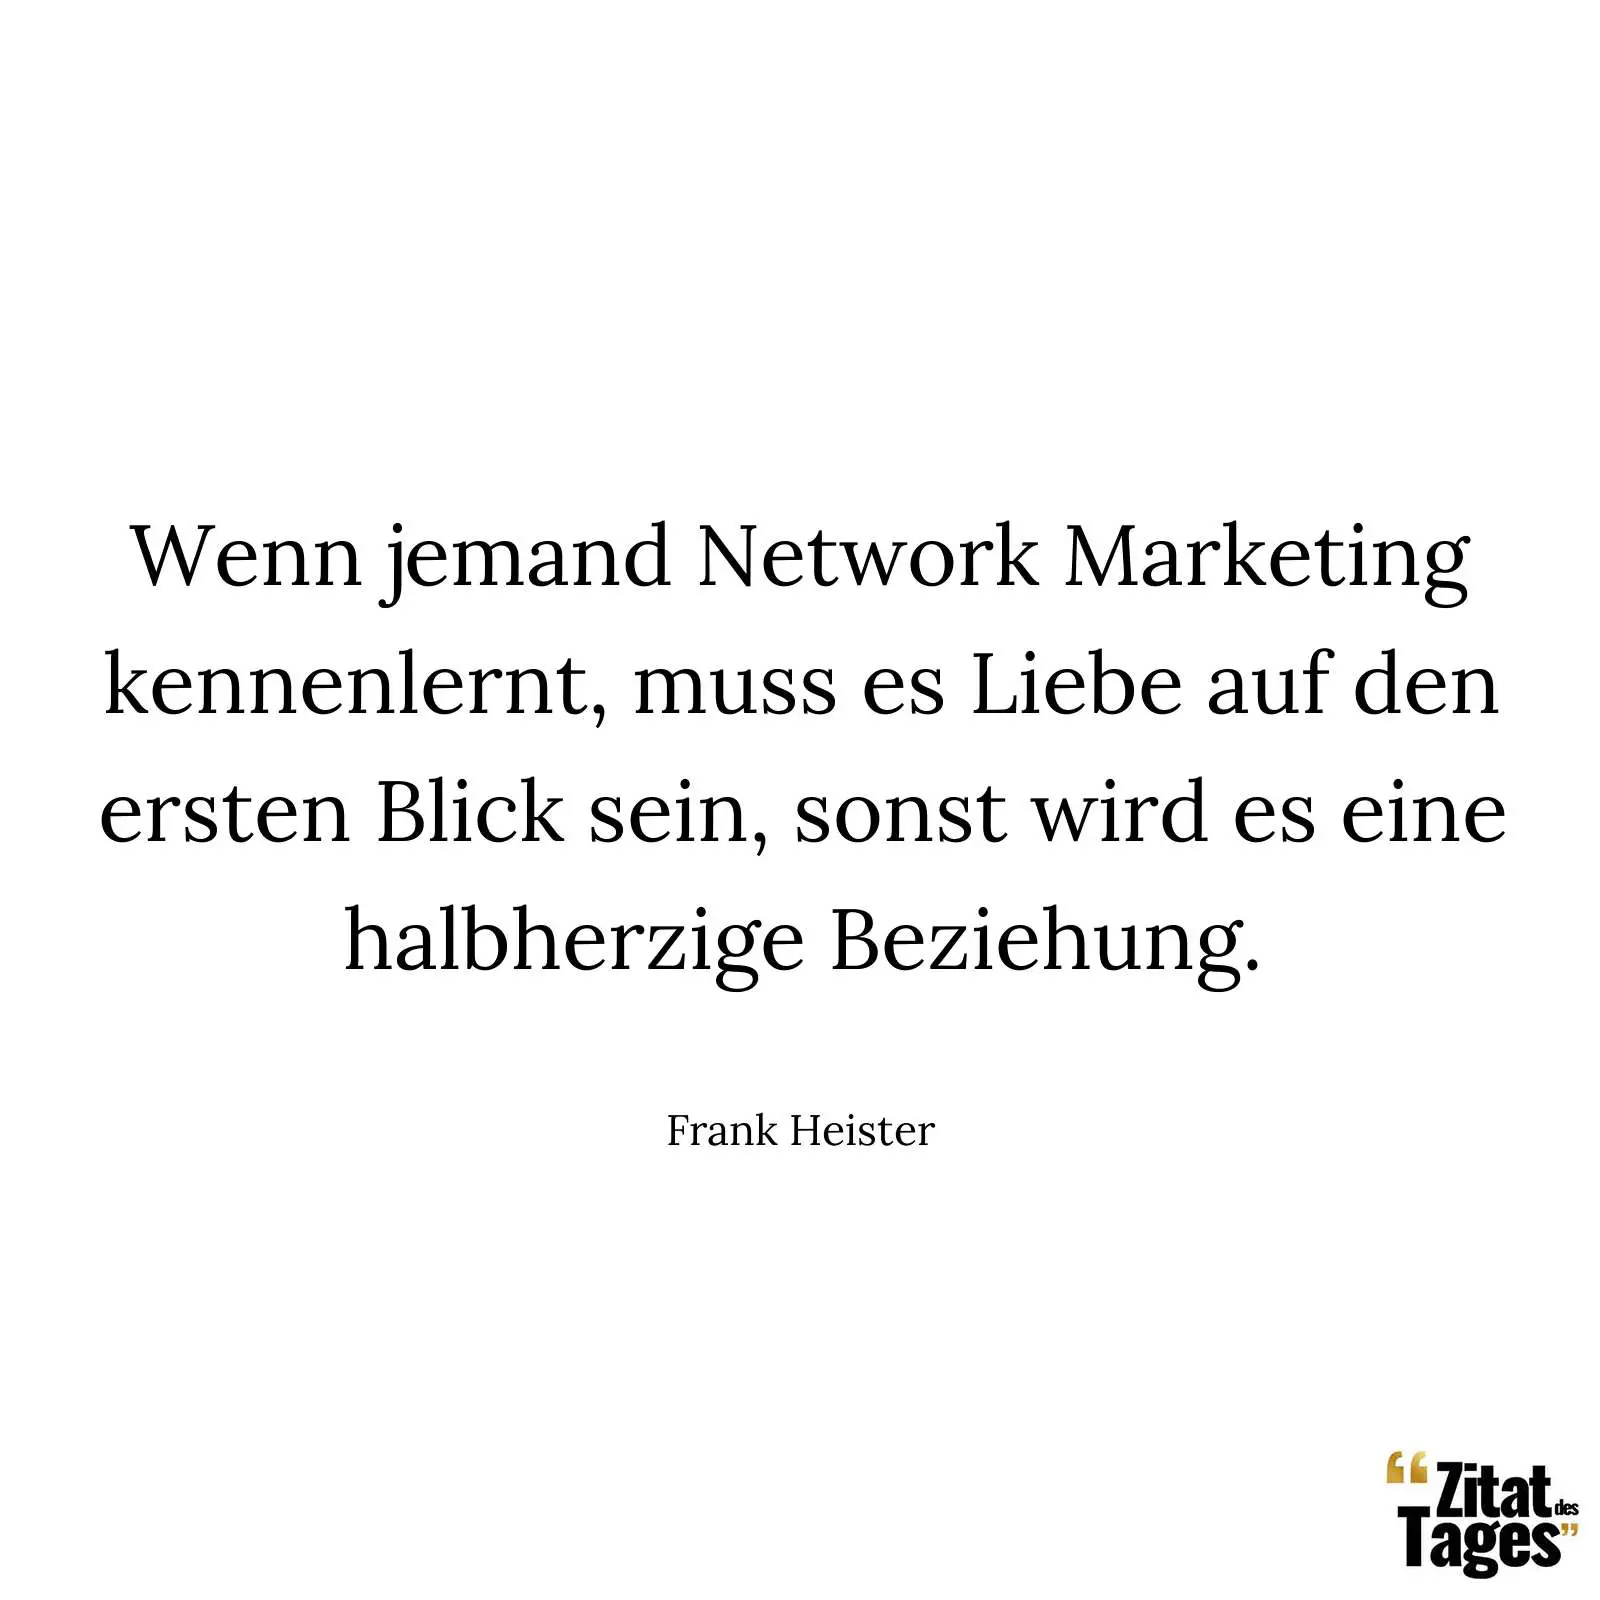 Wenn jemand Network Marketing kennenlernt, muss es Liebe auf den ersten Blick sein, sonst wird es eine halbherzige Beziehung. - Frank Heister